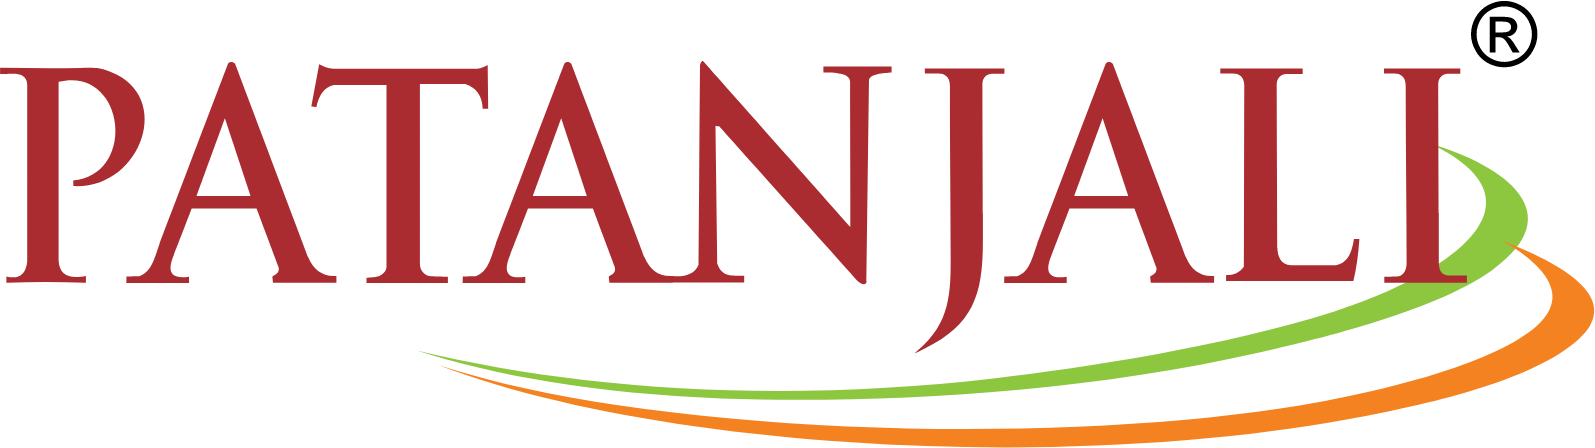 Patanjali Foods logo large (transparent PNG)